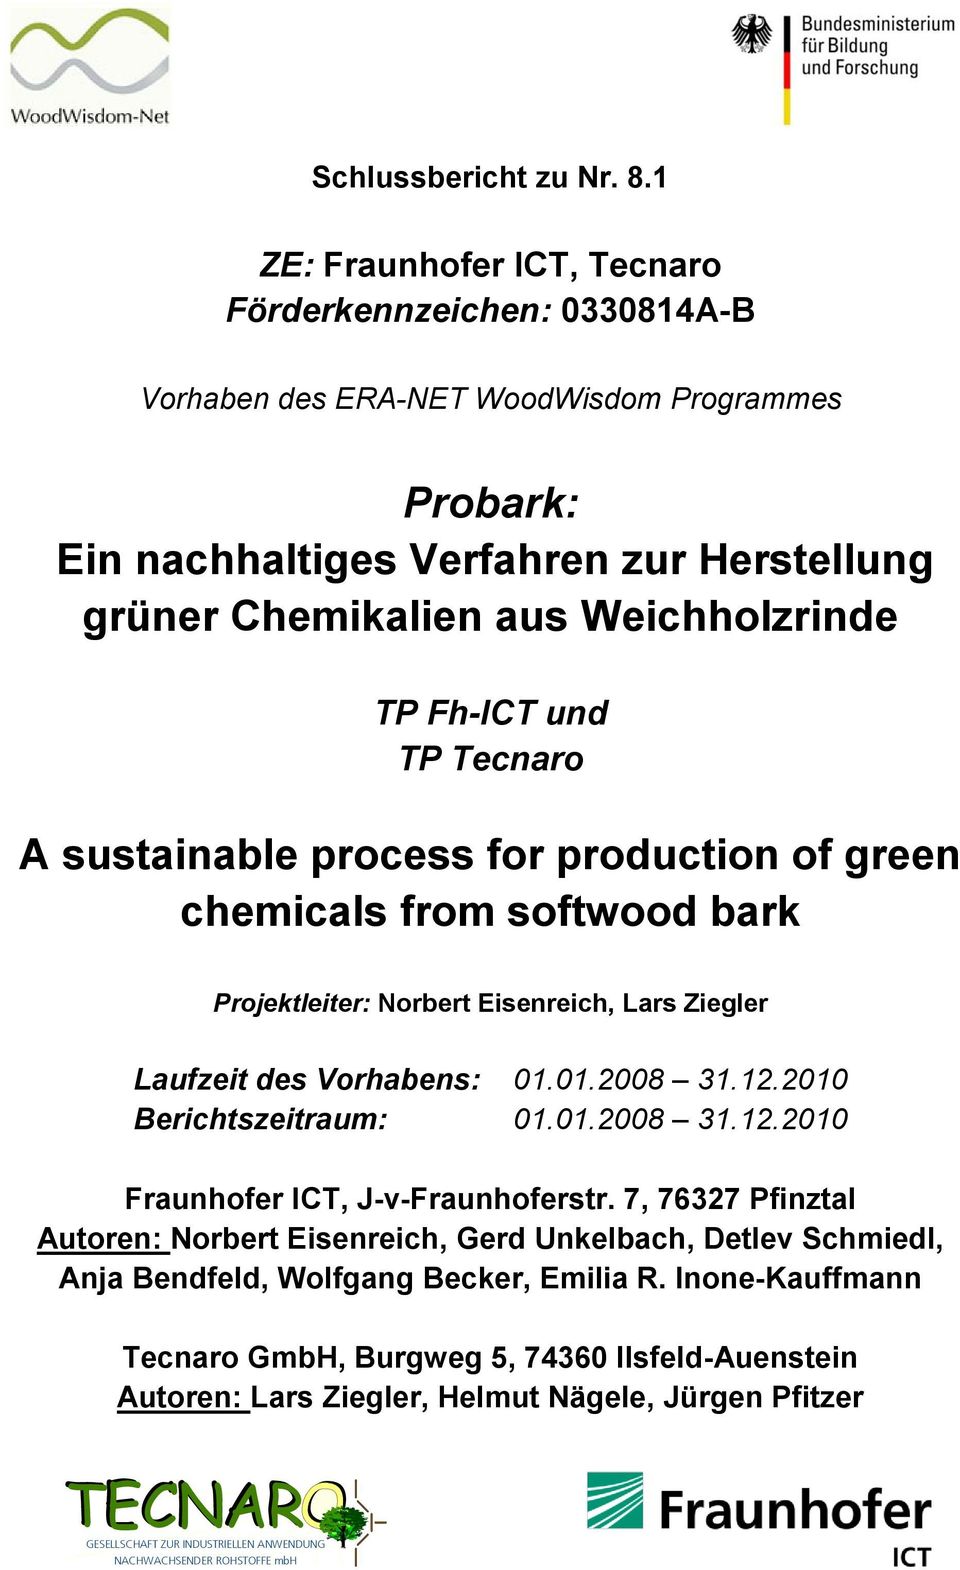 Fh-ICT und TP Tecnaro A sustainable process for production of green chemicals from softwood bark Projektleiter: Norbert Eisenreich, Lars Ziegler Laufzeit des Vorhabens: 01.01.2008 31.12.